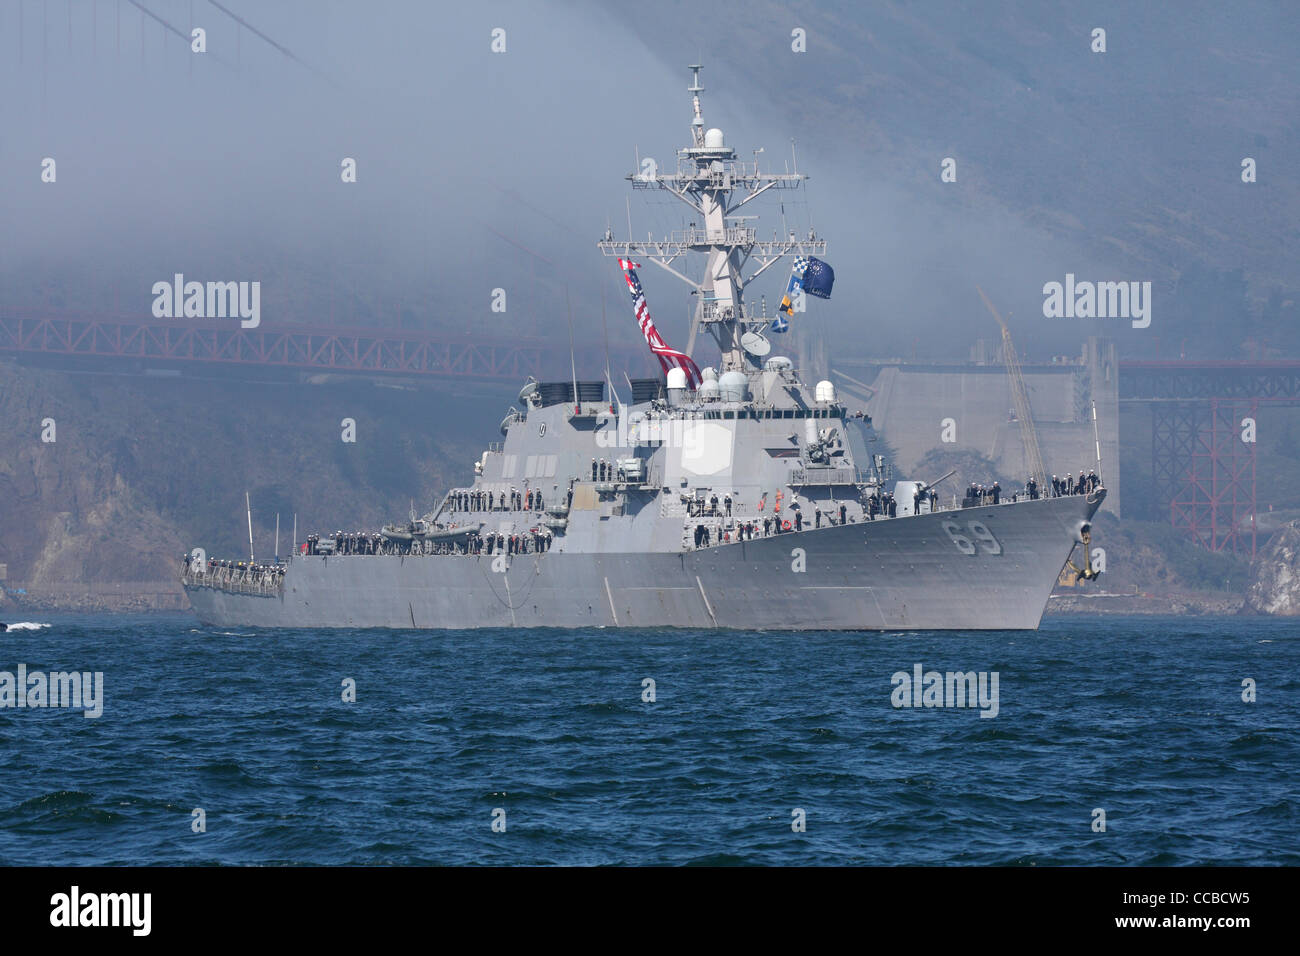 Aegis de la classe Arleigh Burke destroyer lance-missiles USS Milius (DDG-69) entre dans la baie de San Francisco. Banque D'Images